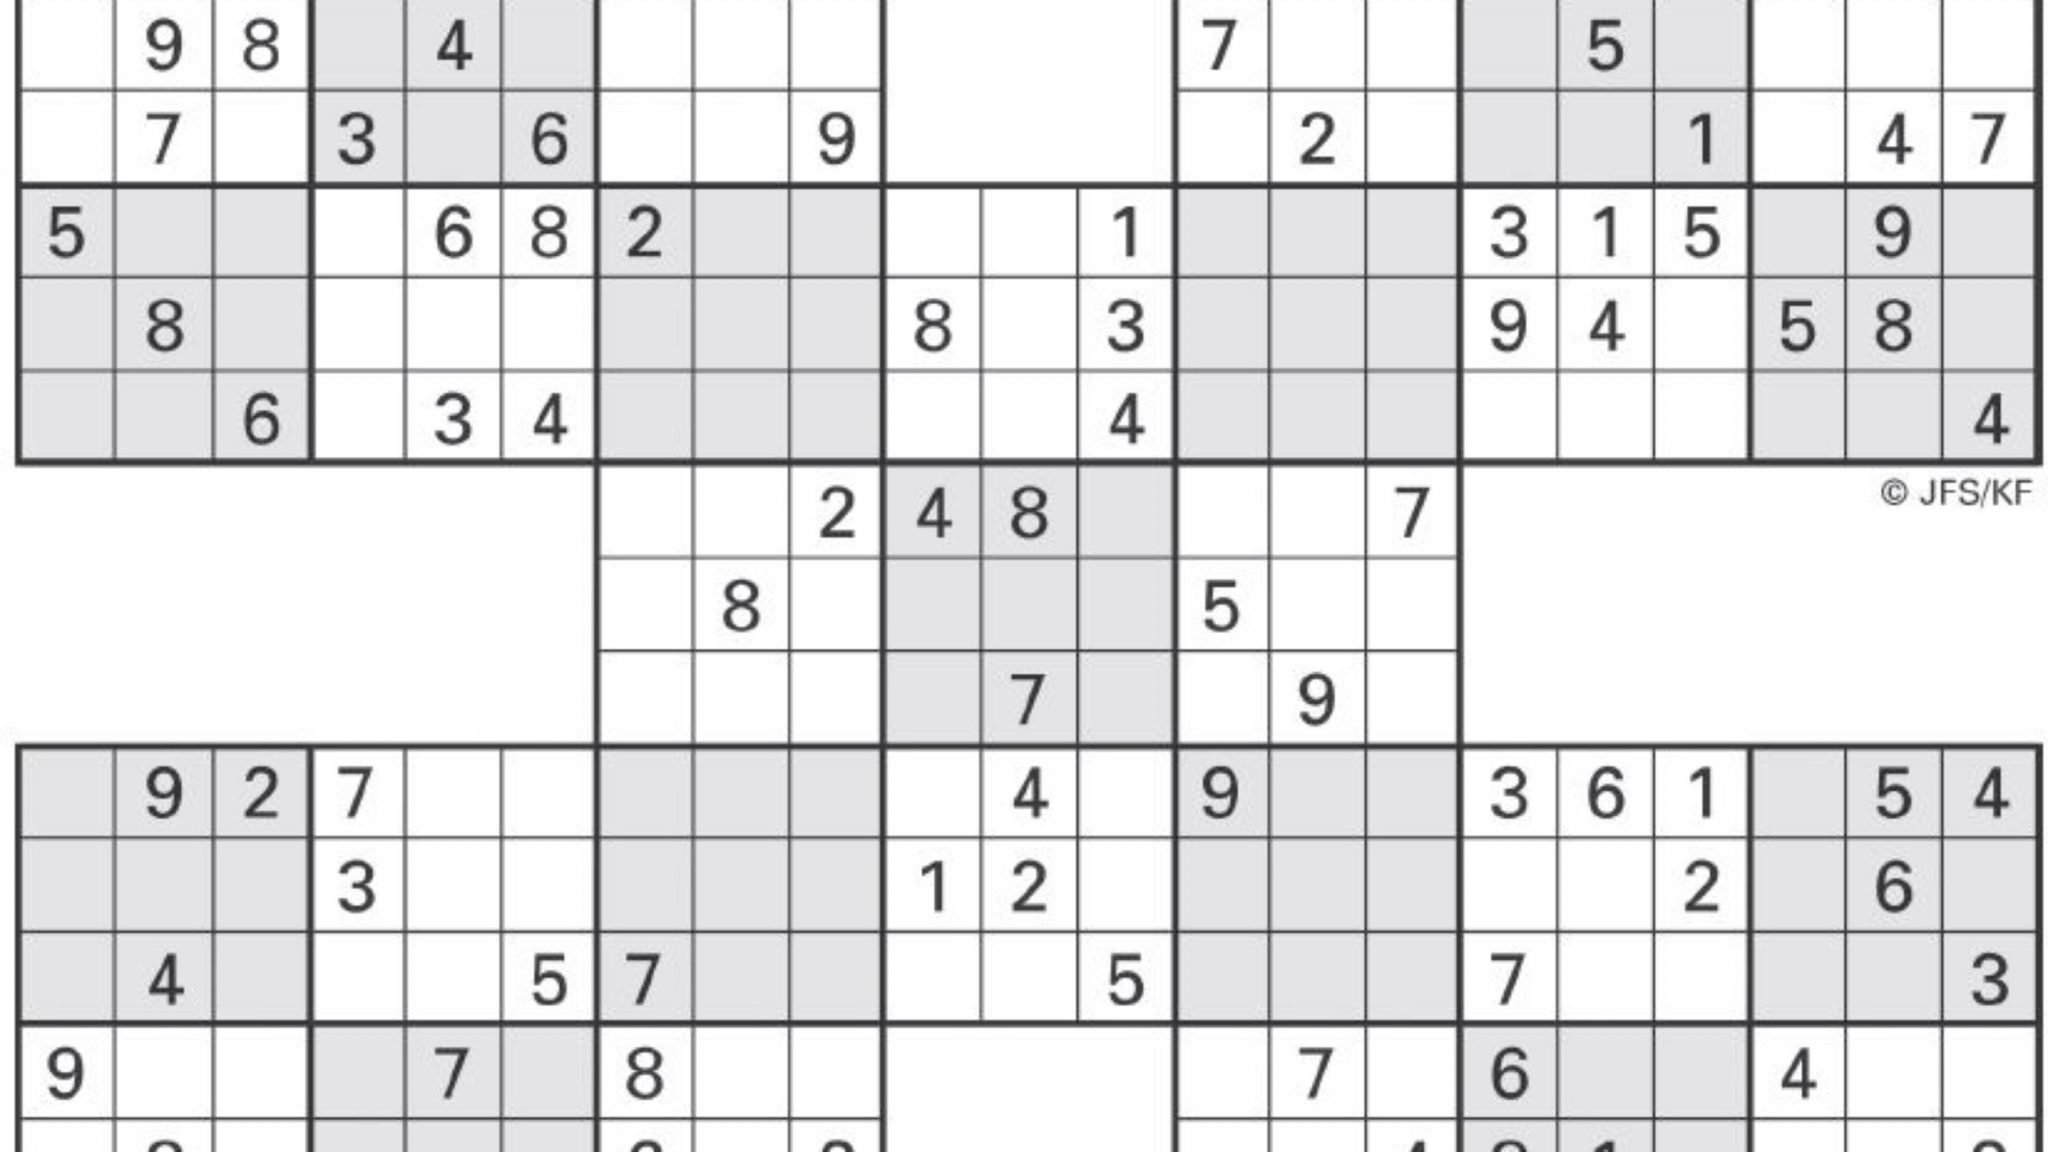 5-square-sudoku-printable-sudoku-puzzles-printable